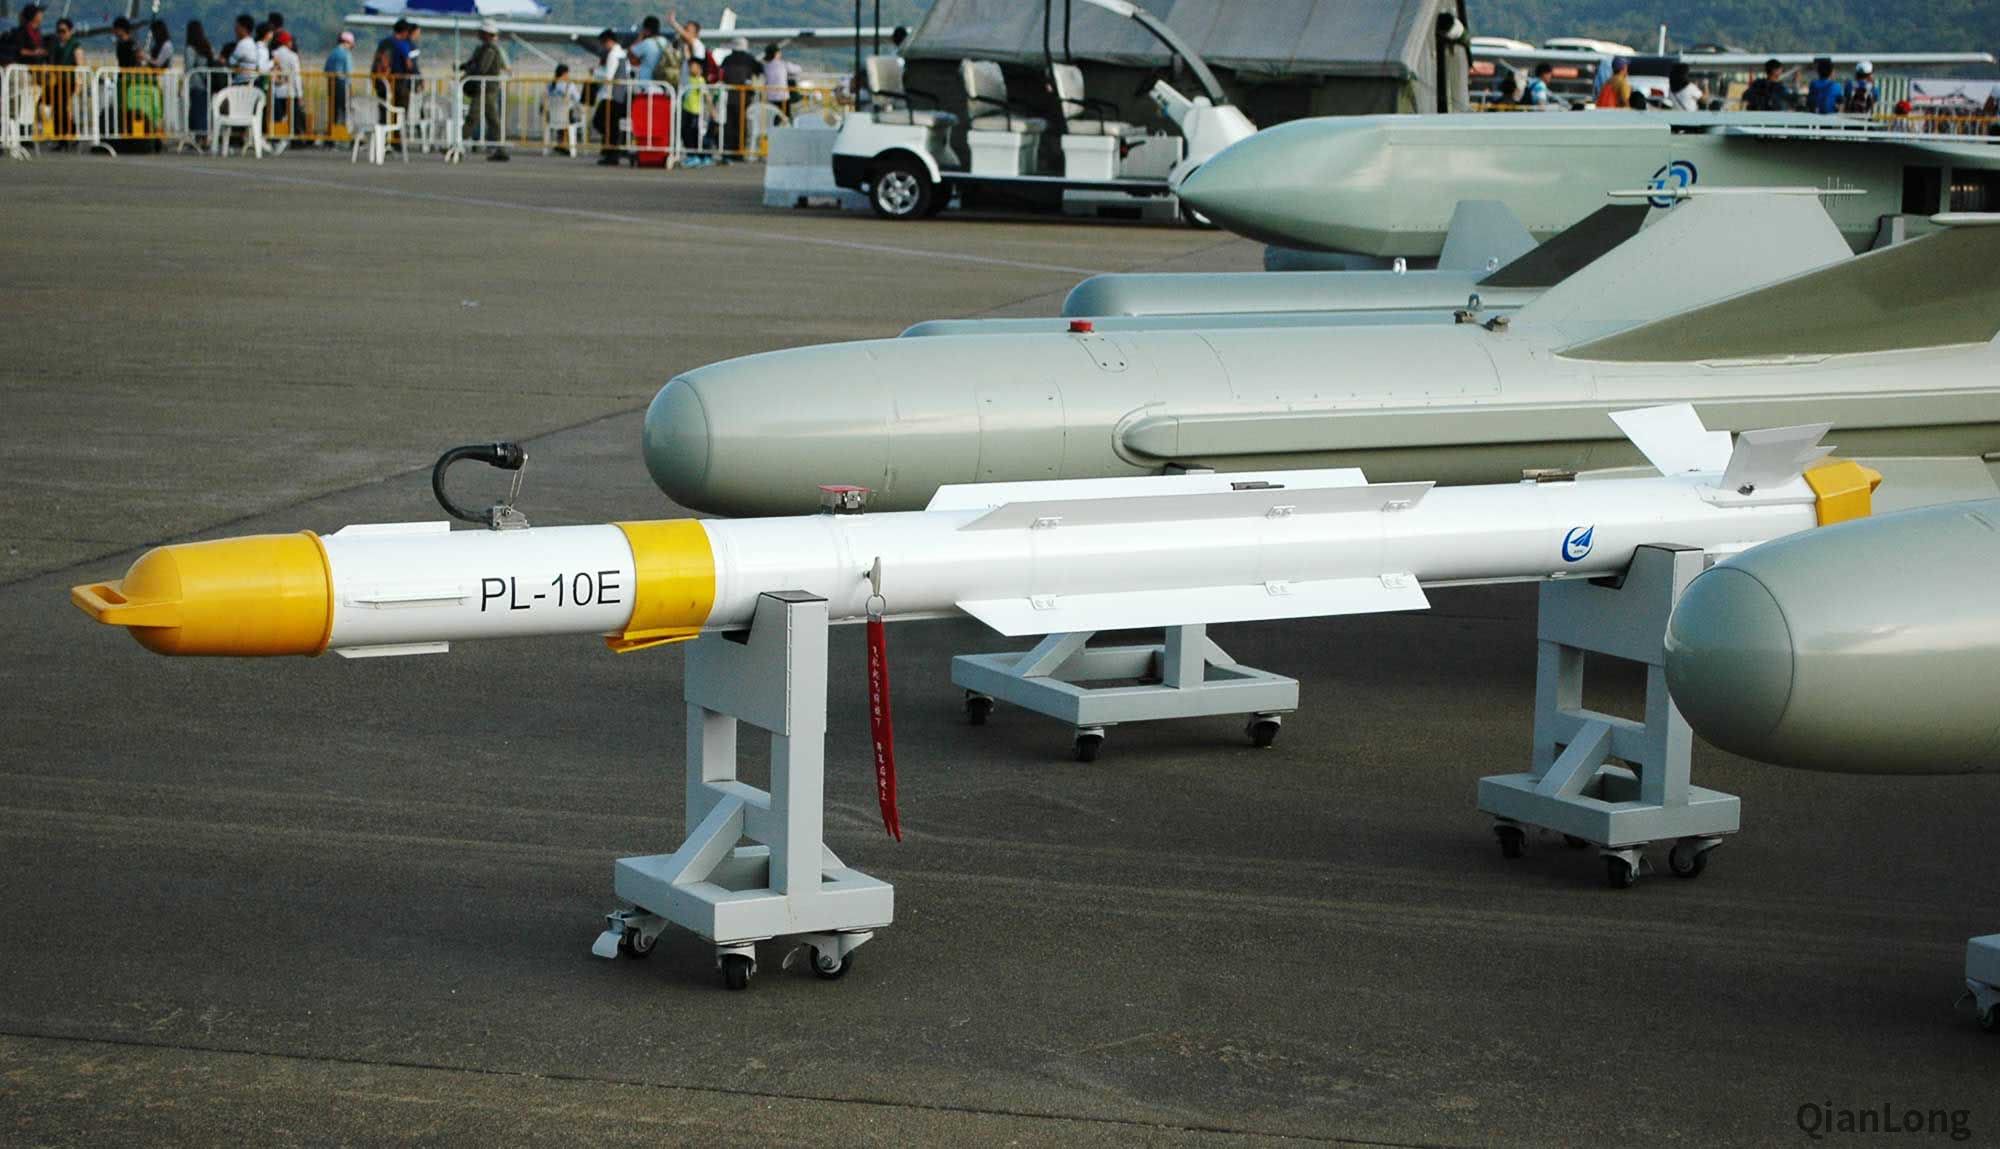 中国最先进的空空导弹"霹雳-10e"有多强?f35也难以